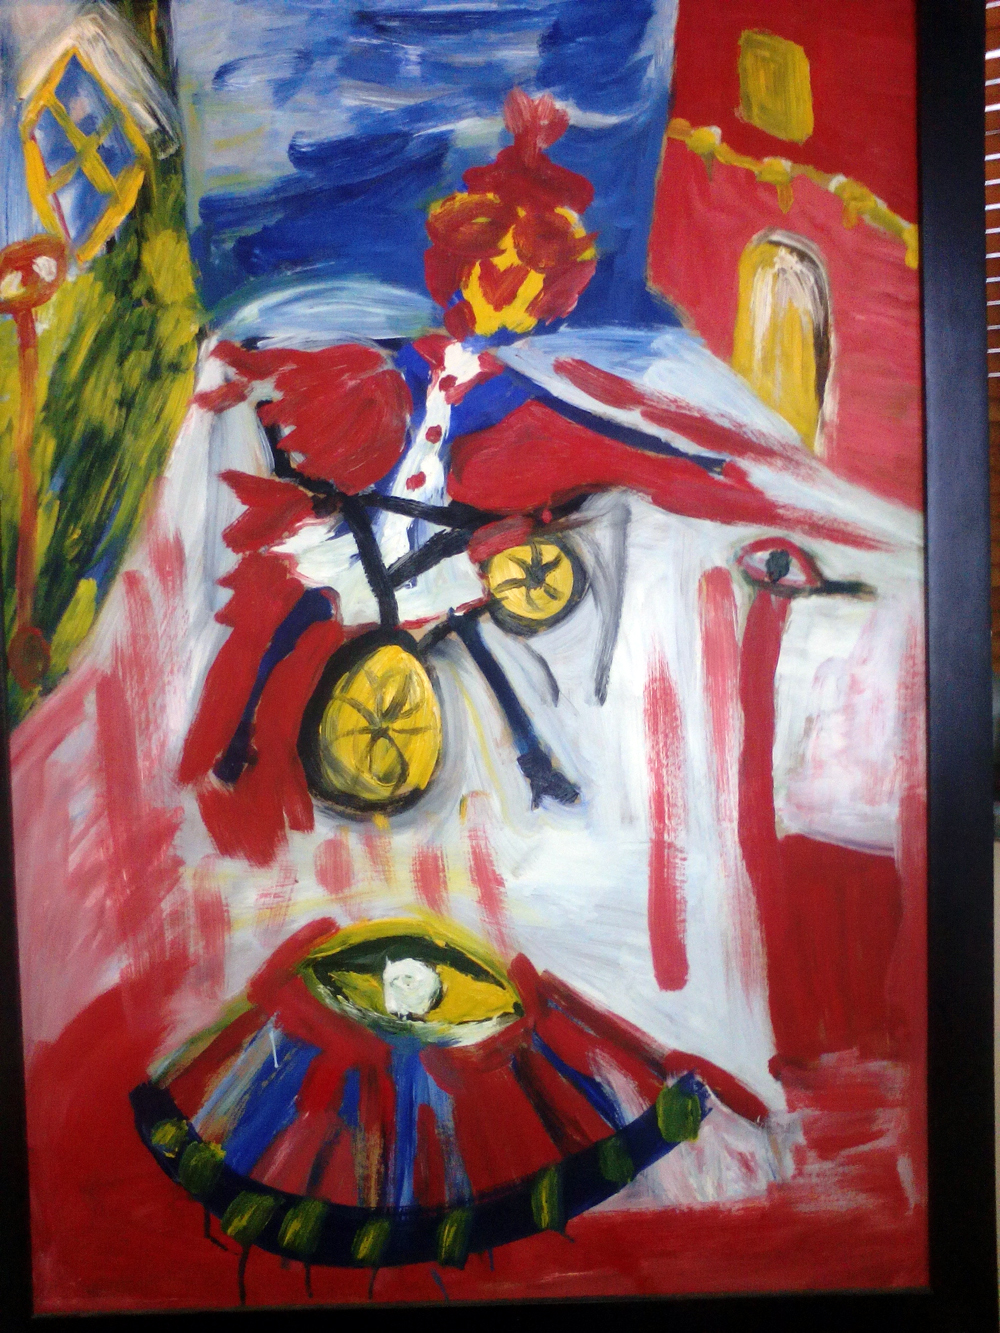 Картина Антона Симакова «Курица на велосипеде» символизирует человека, который поднялся над добром и злом.